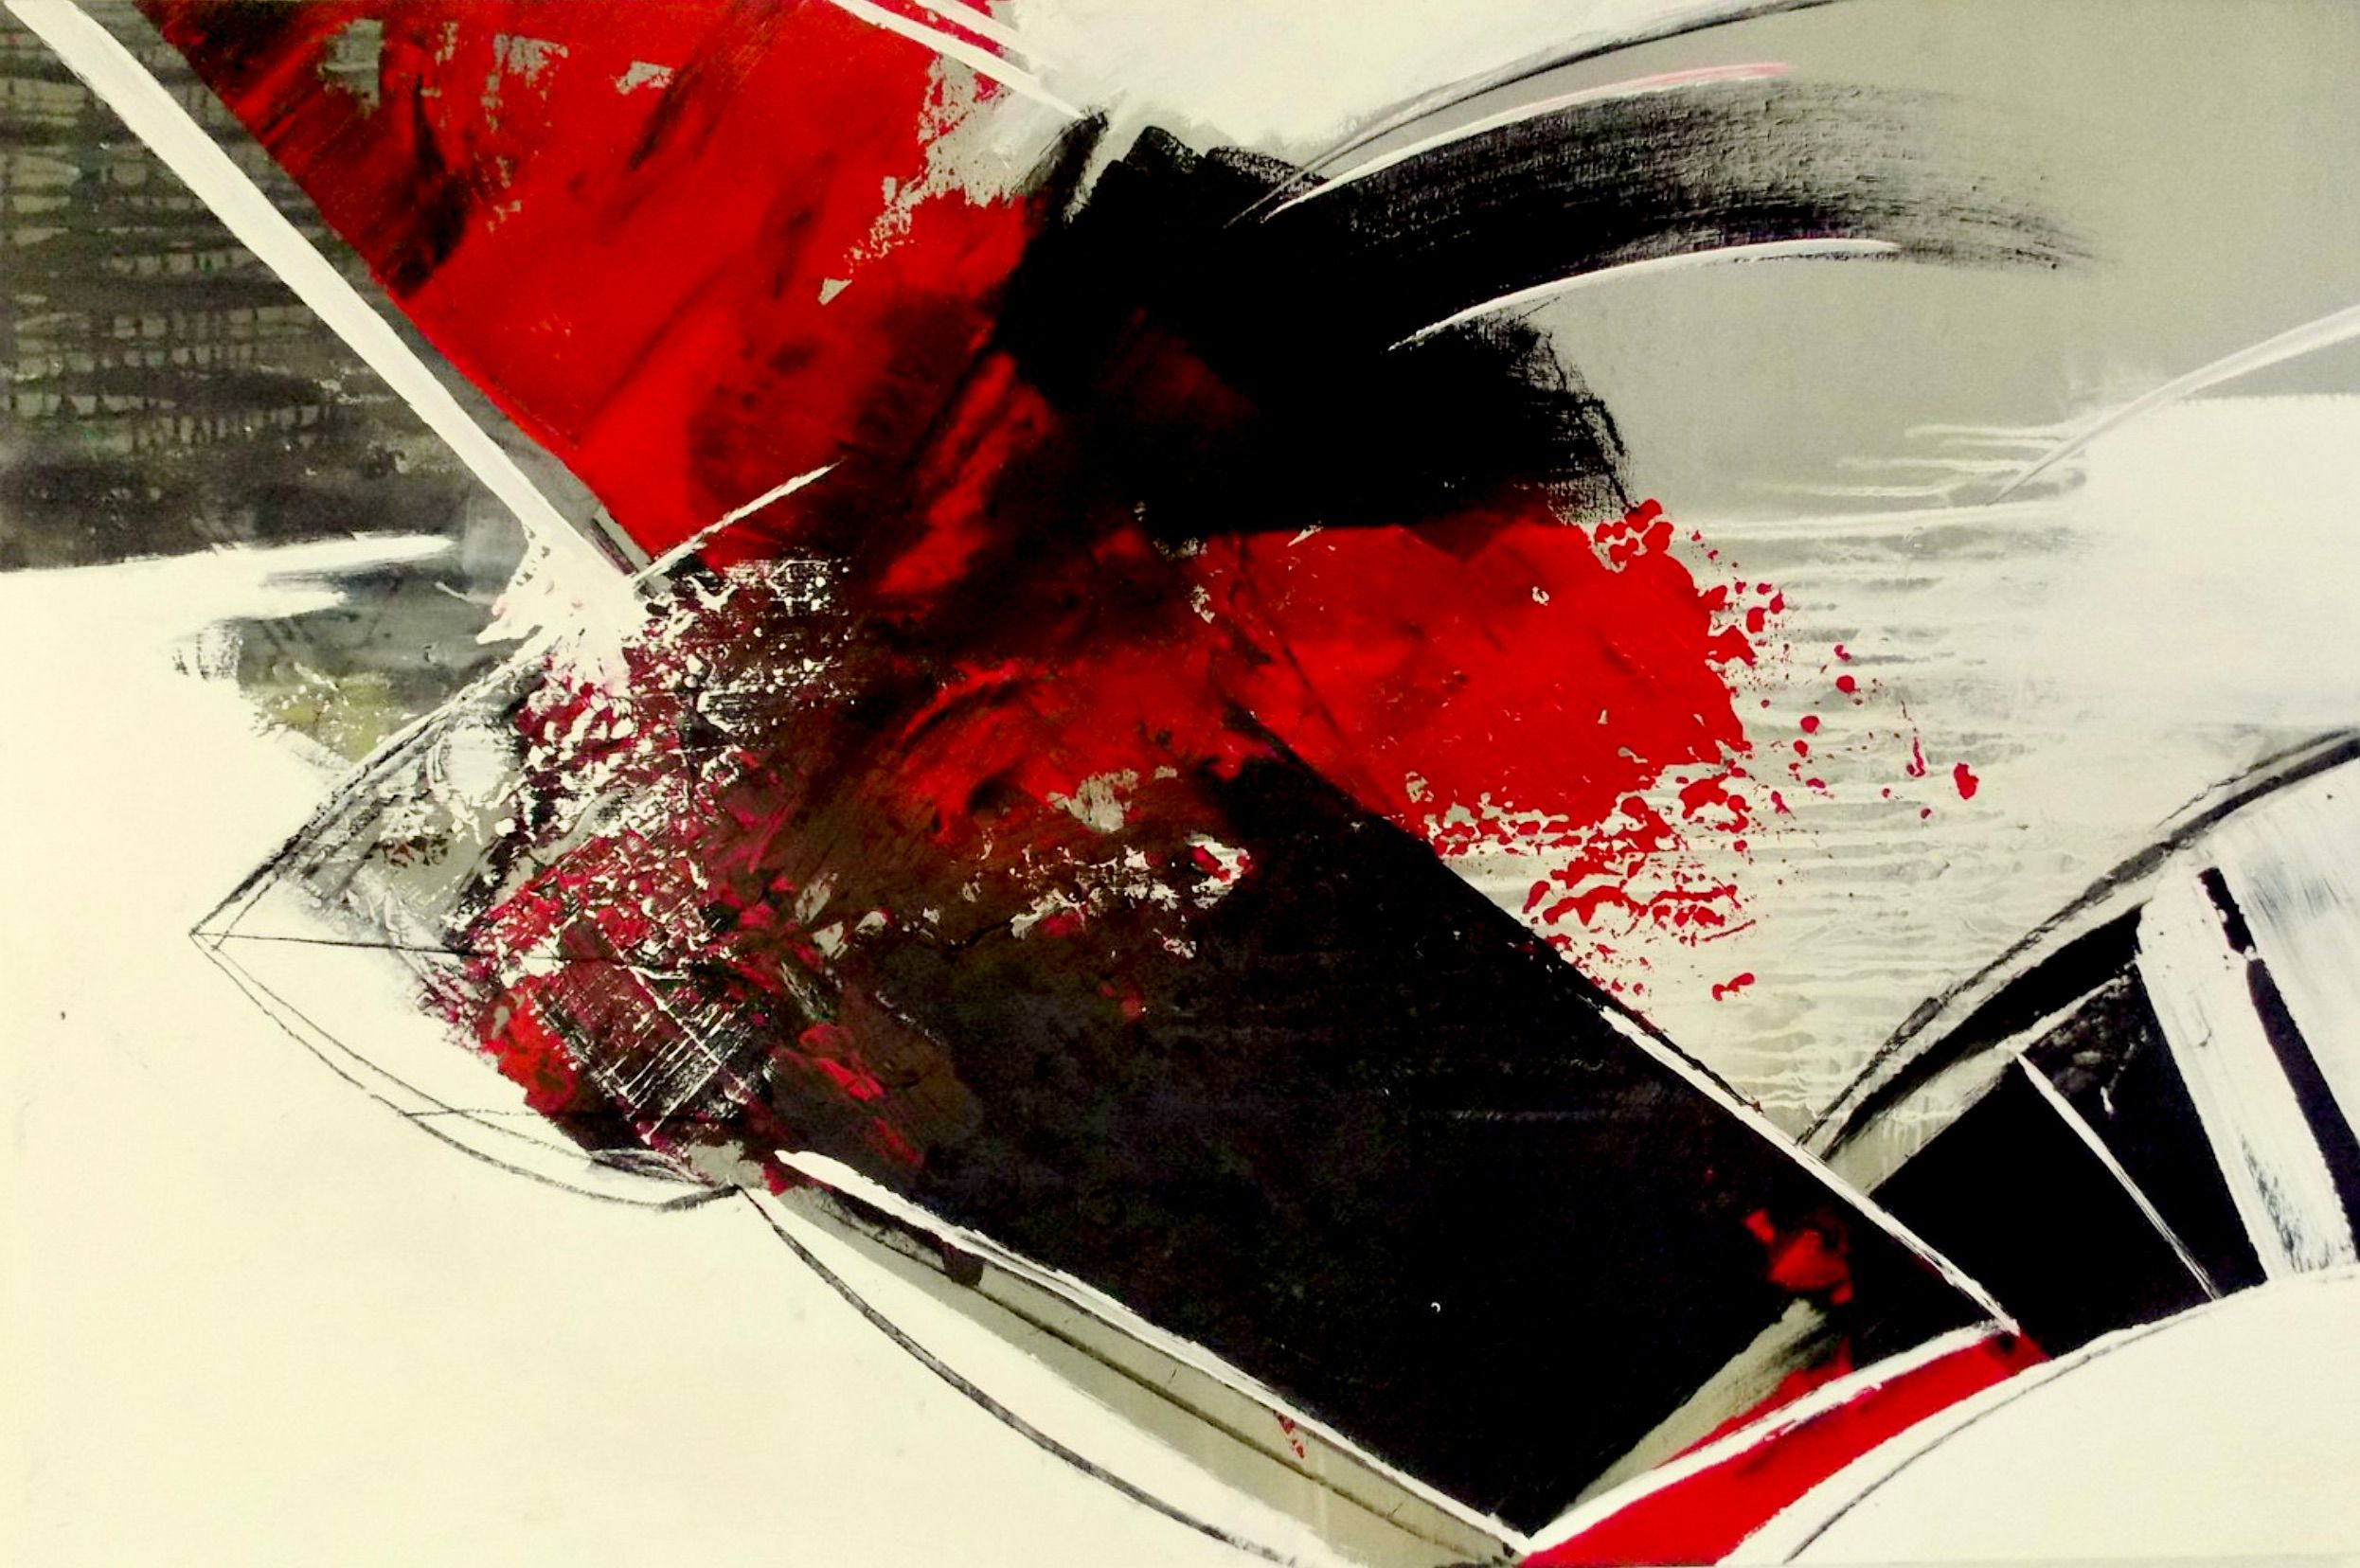 Le "Champ rouge - réduit -" de Christa Haack Cette peinture abstraite a pour couleurs le rouge, le noir et le beige.